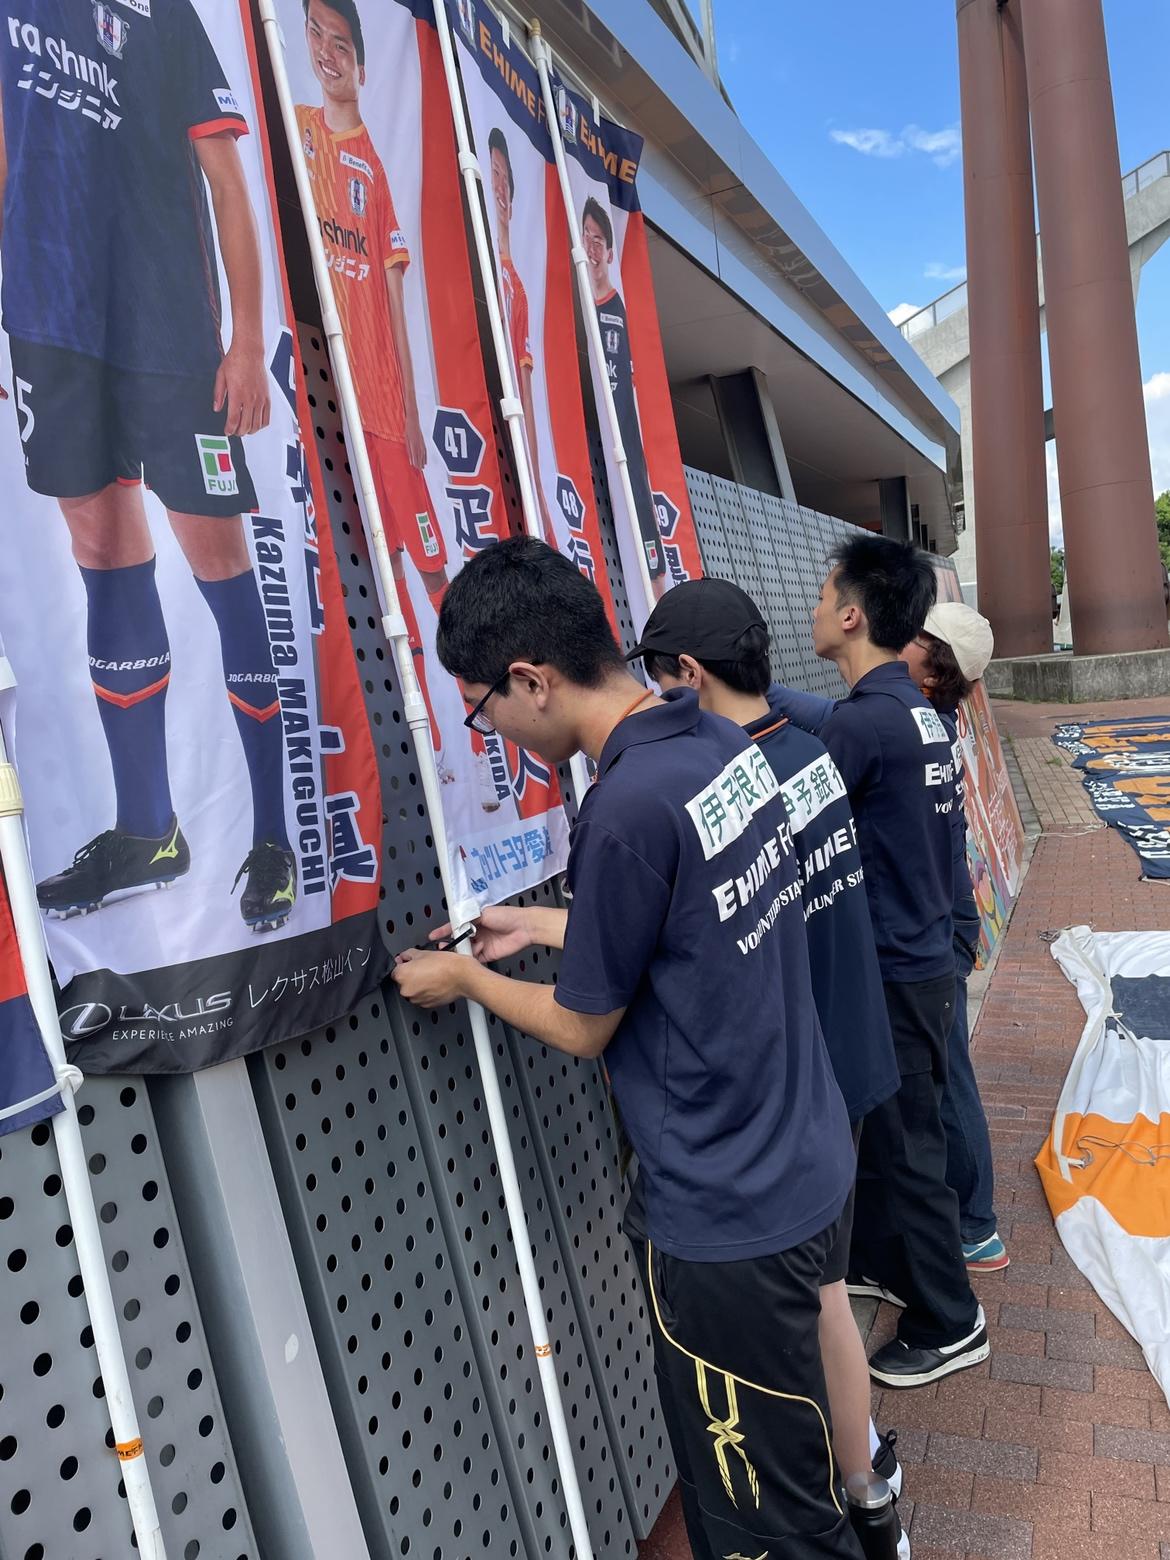 愛媛FCのスポンサーの幕を協力して設置している生徒